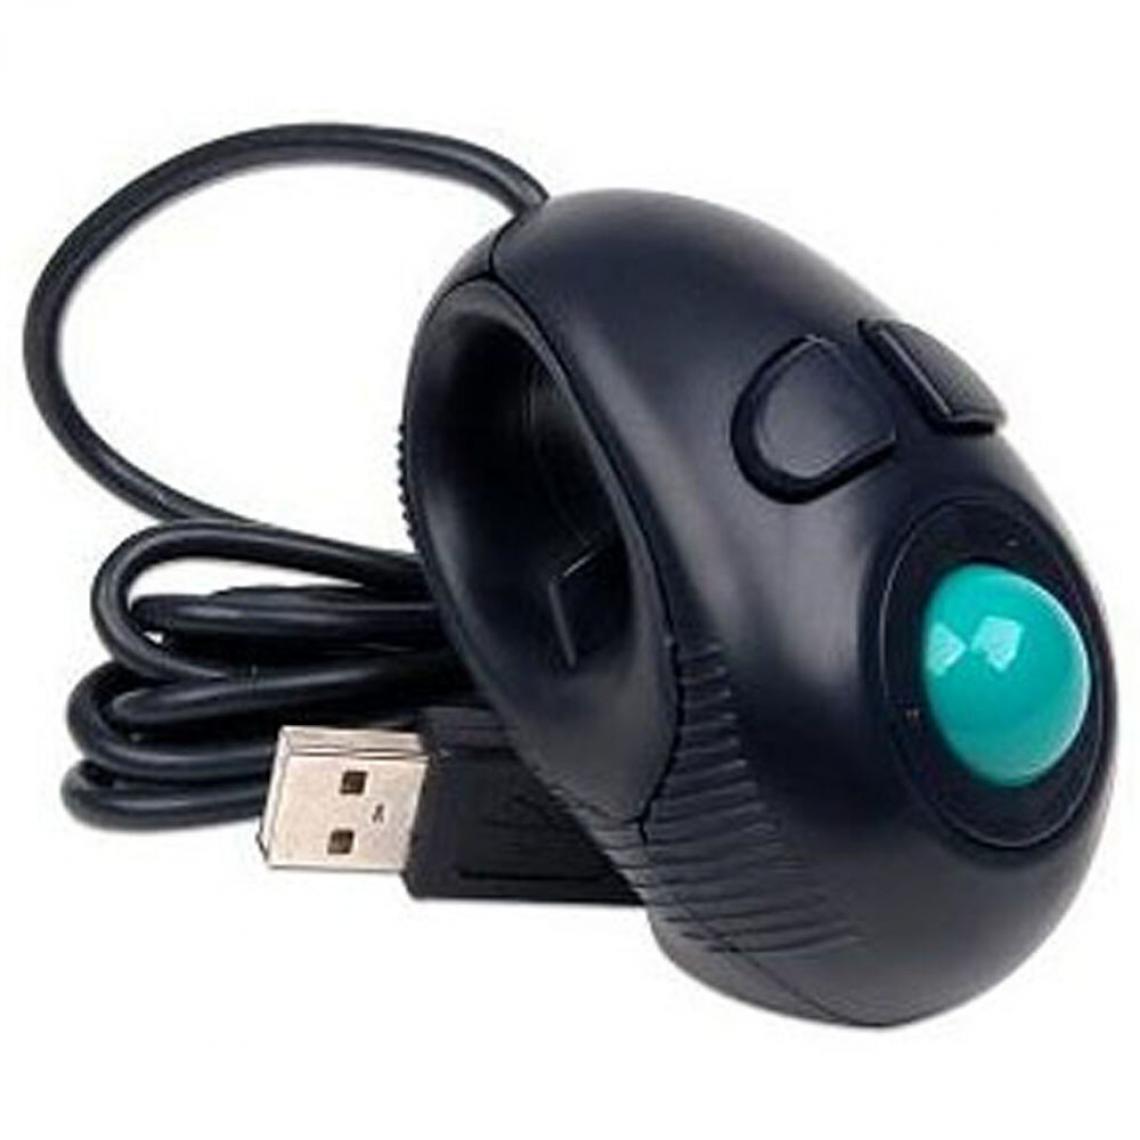 Universal - Doigts à la main 4D USB mini portable trackball souris PC ordinateur portable(Le noir) - Souris